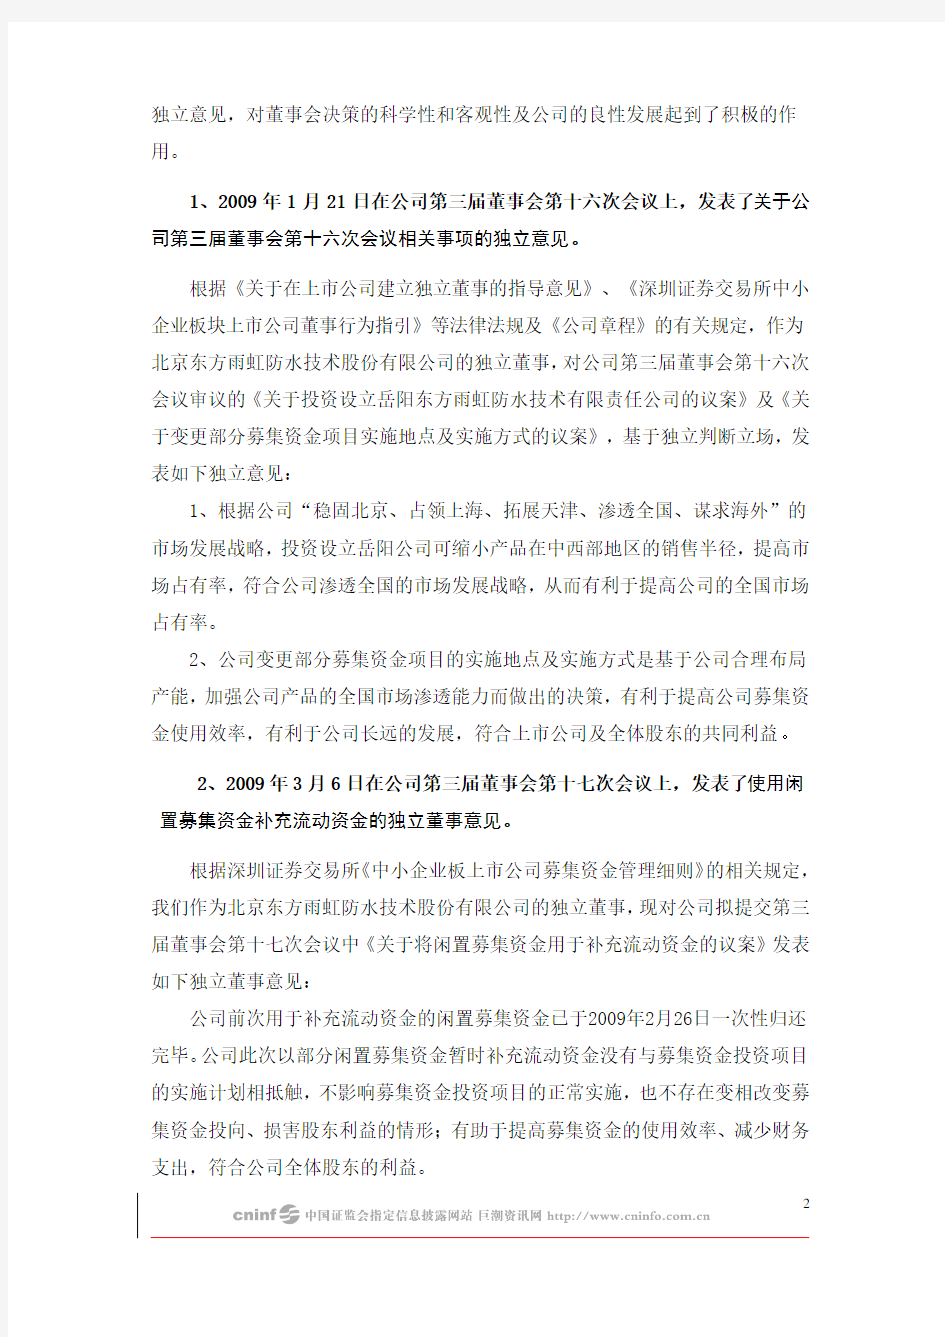 东方雨虹：独立董事2009年述职报告(黄庆林) 2010-01-30